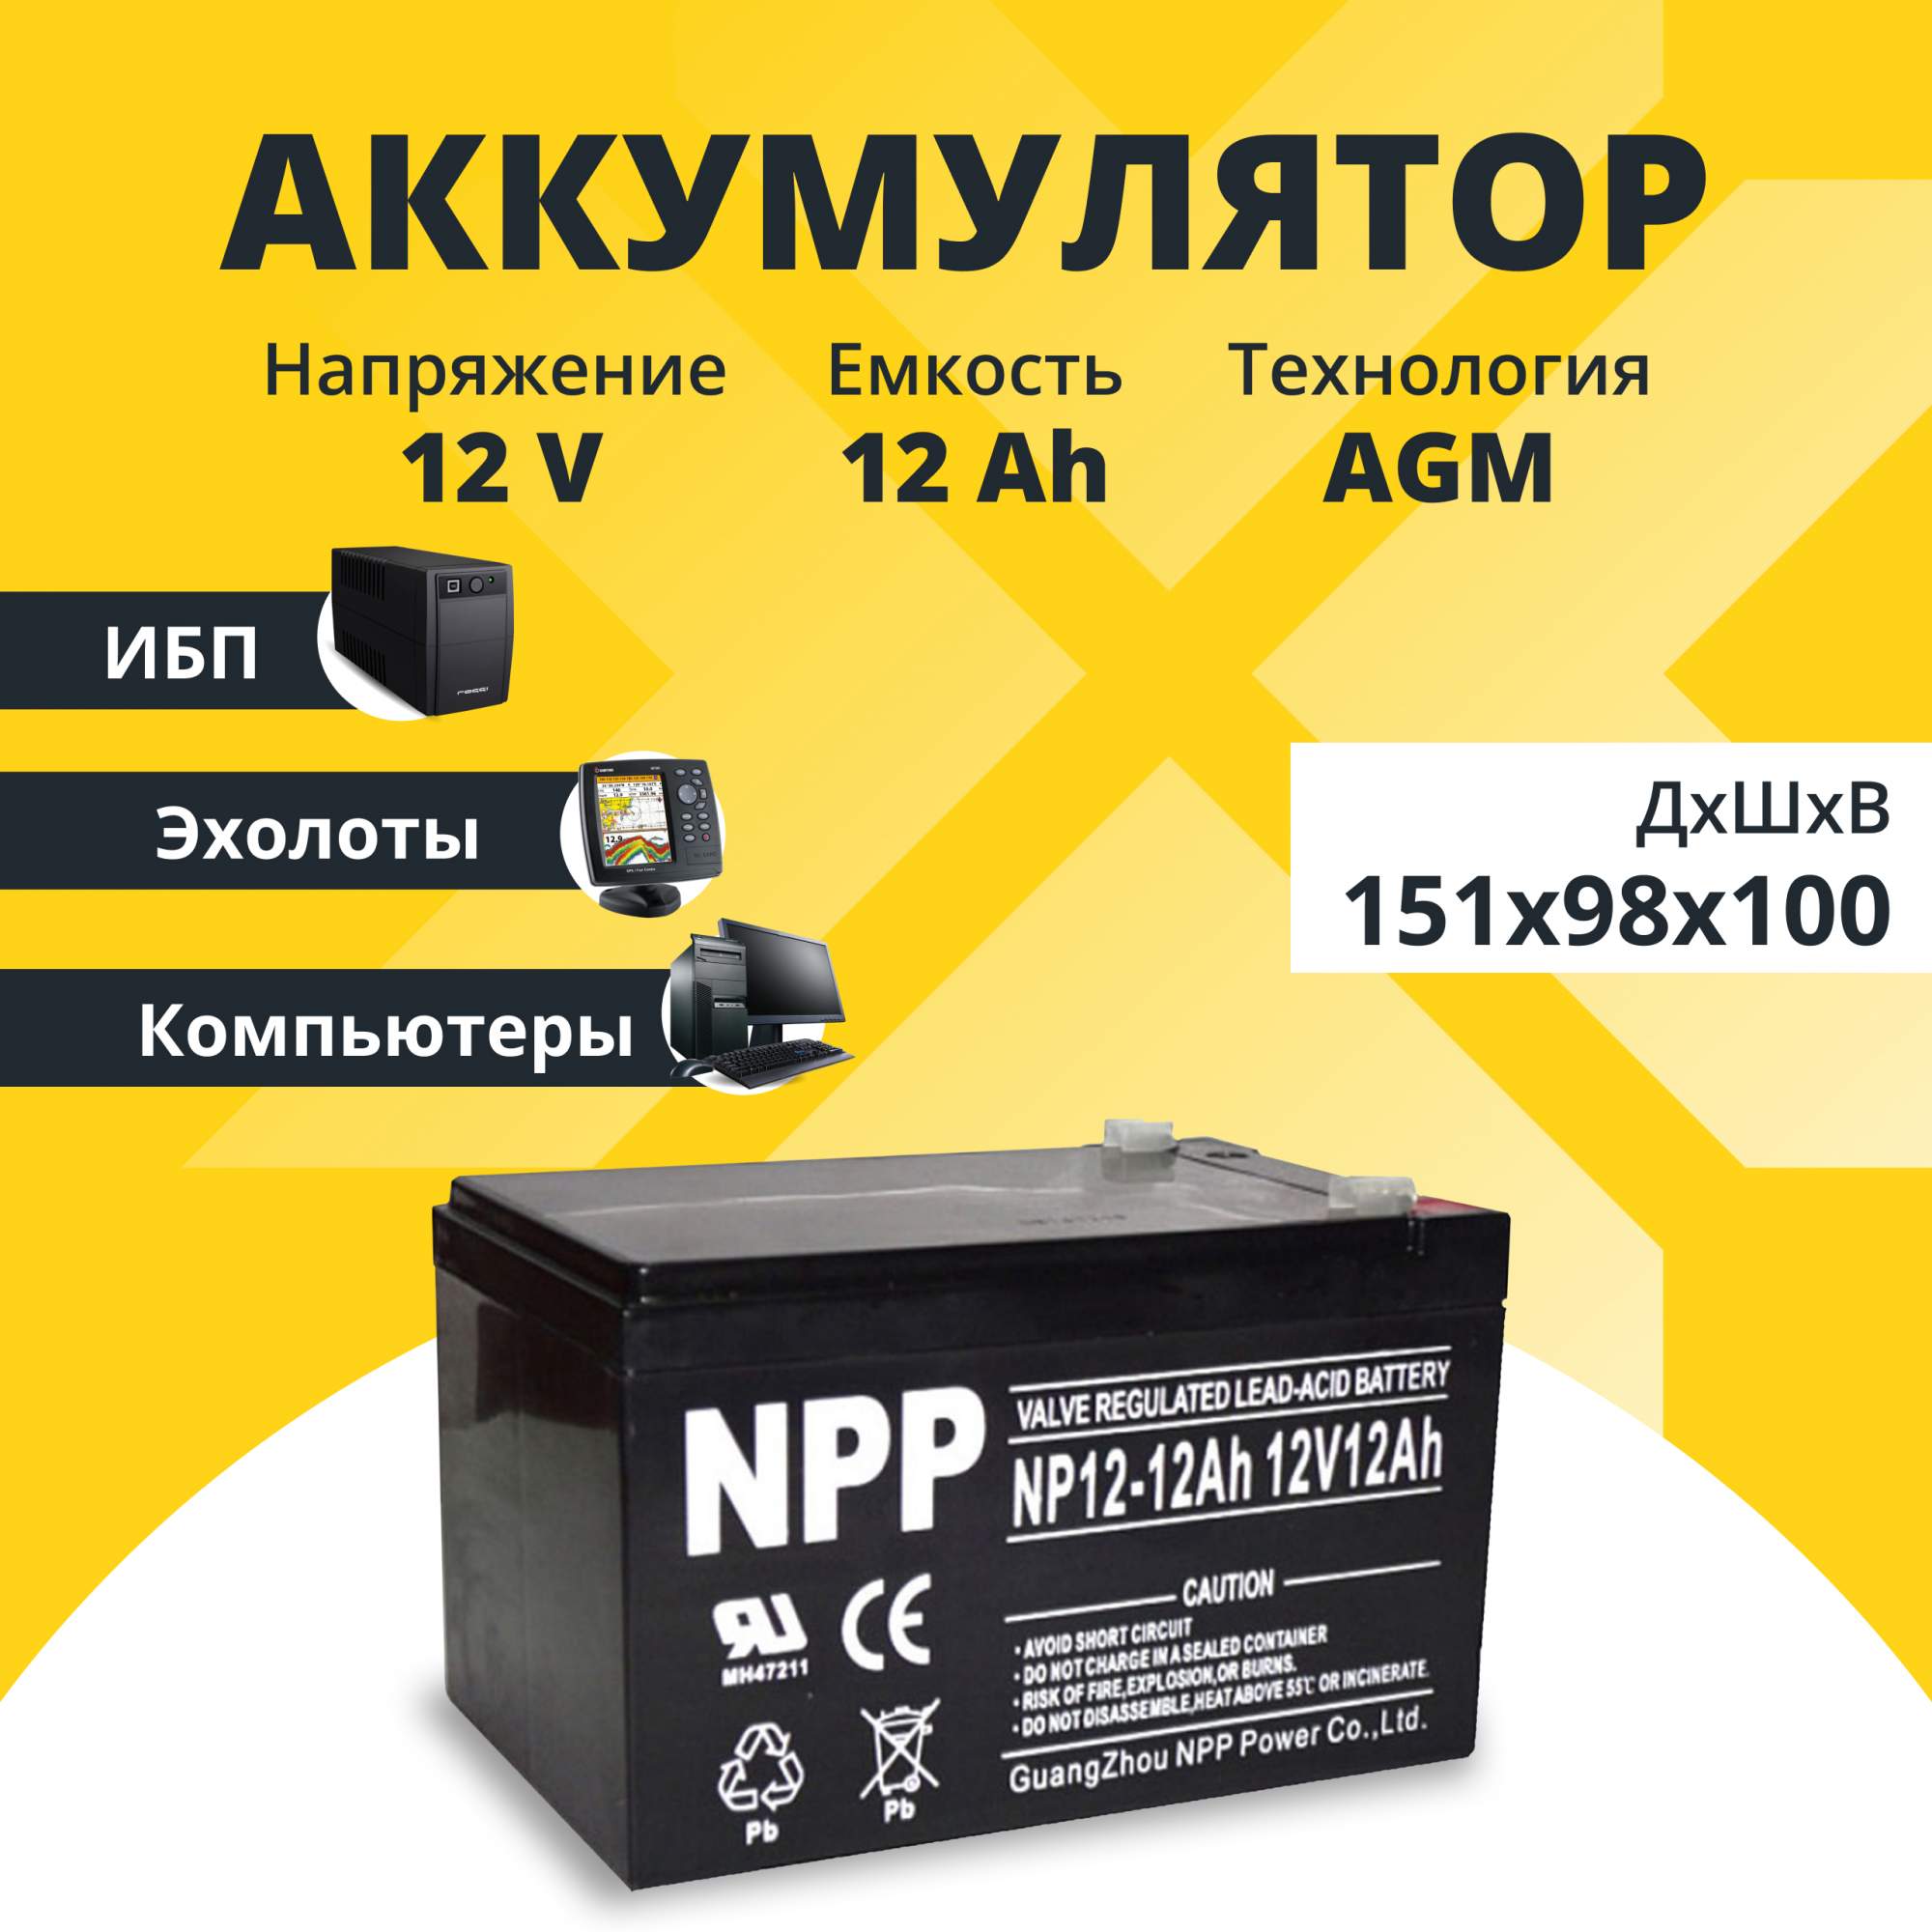 Аккумулятор для ИБП NPP NP 12-12 12 А/ч 12 В (NP12-12), купить в Москве, цены в интернет-магазинах на Мегамаркет